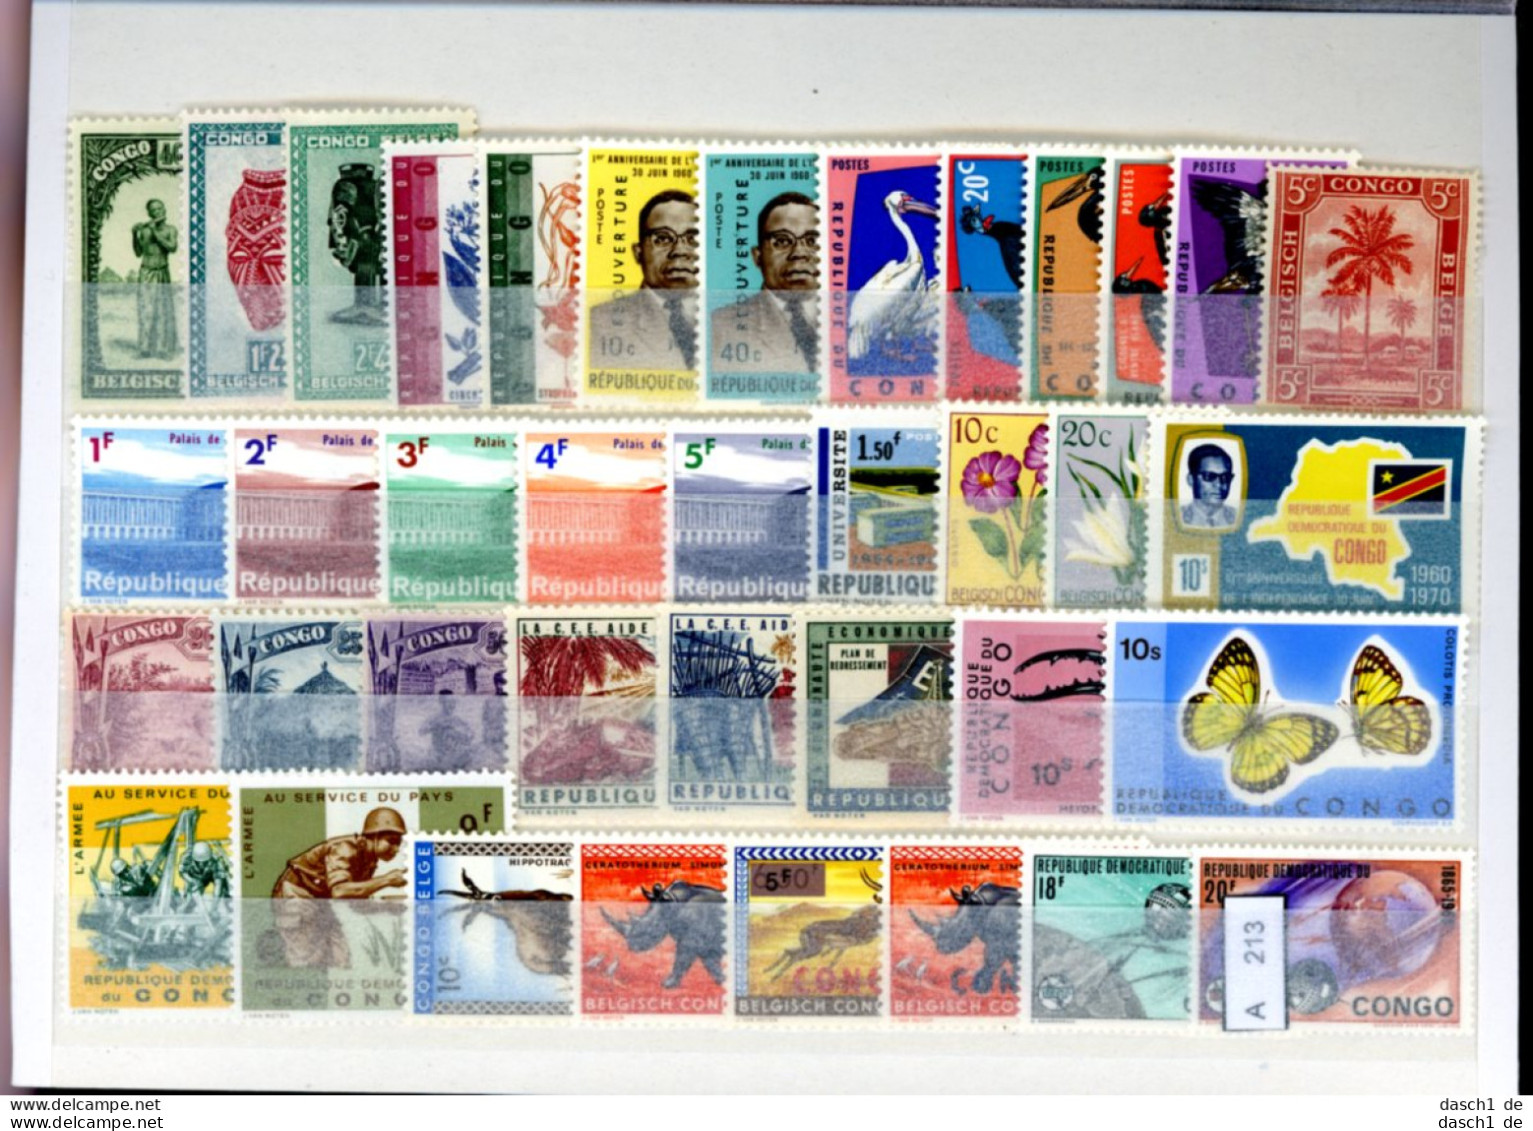 Slg. Postfrische Marken, Xx, 3 Lose Auf A5-Karte Dichtgesteckt, Schwerpunkt Motivmarken, Afrika - Collections